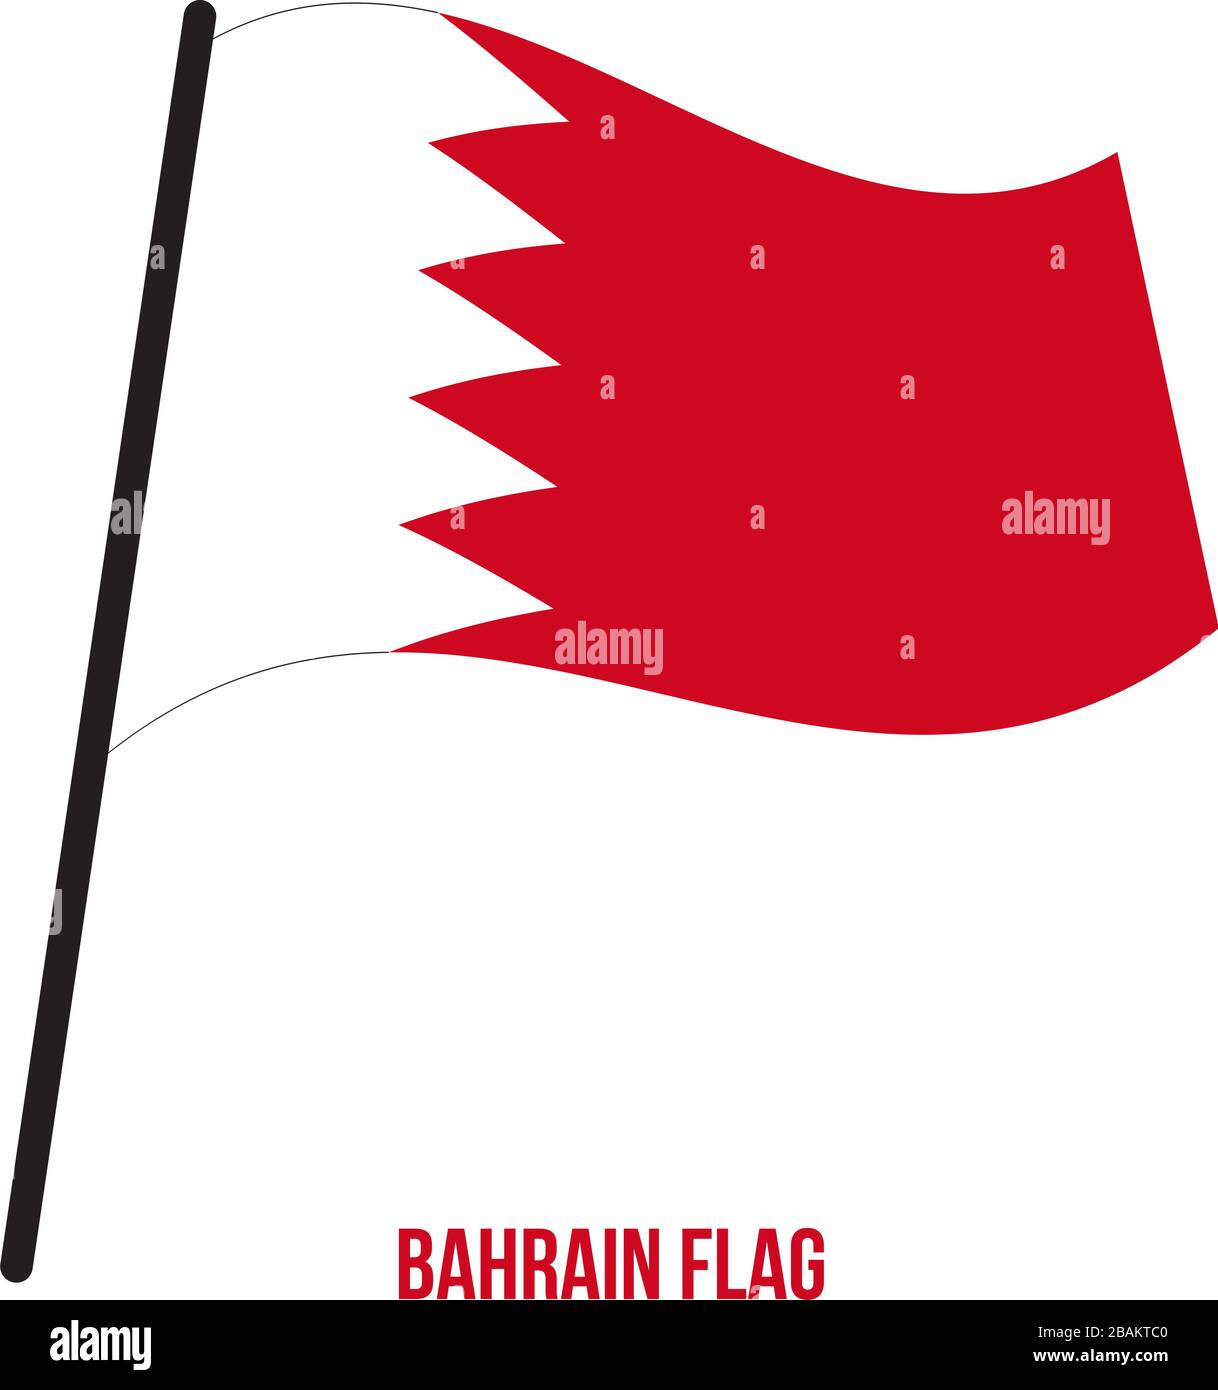 Bahrain Flag Waving Vector Illustration on White Background. Bahrain National Flag. Stock Vector